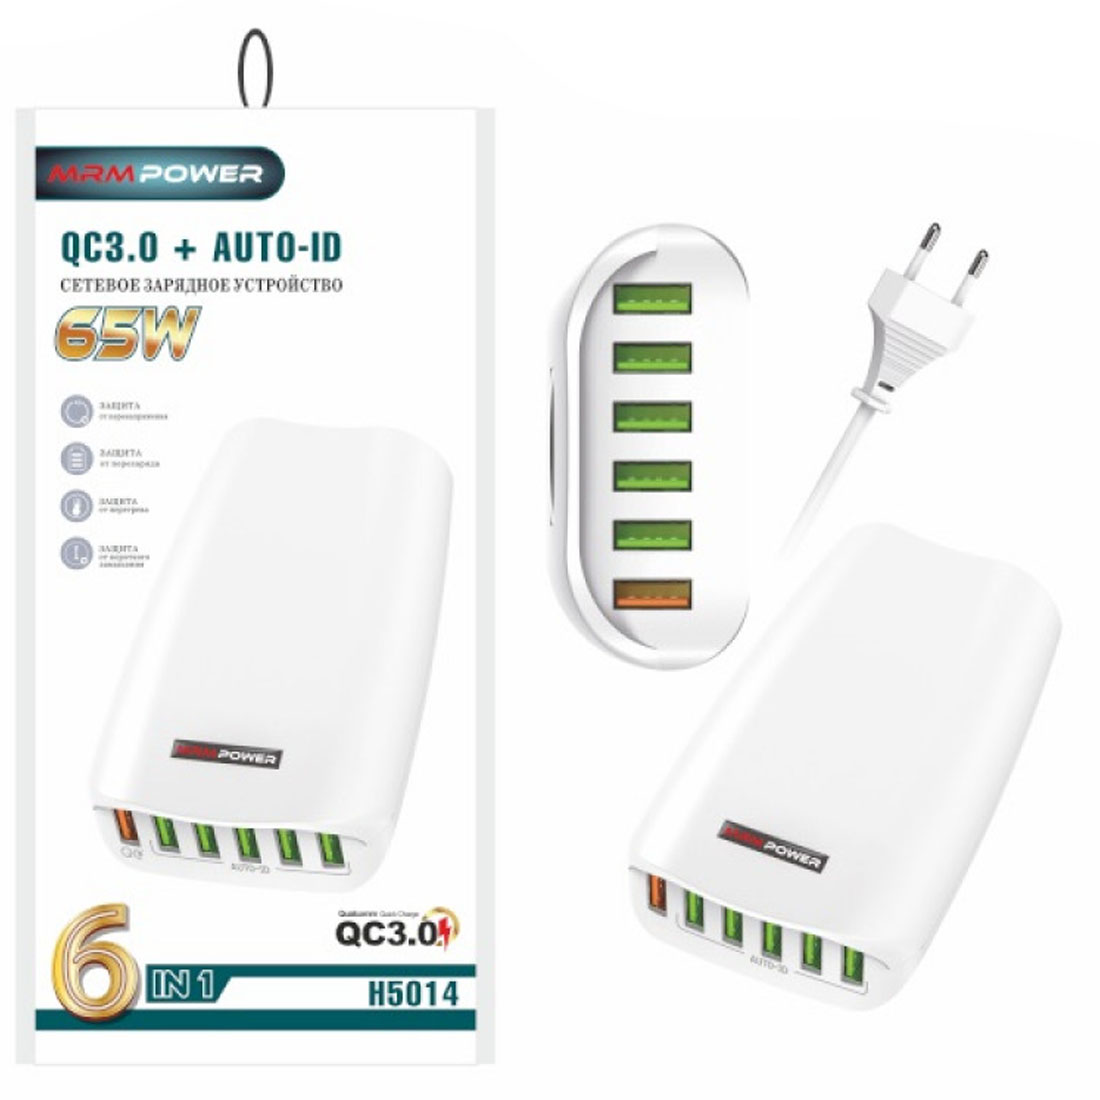 СЗУ (Сетевое зарядное устройство) MRM H5014, 65W, 6 USB, QC3.0, цвет белый